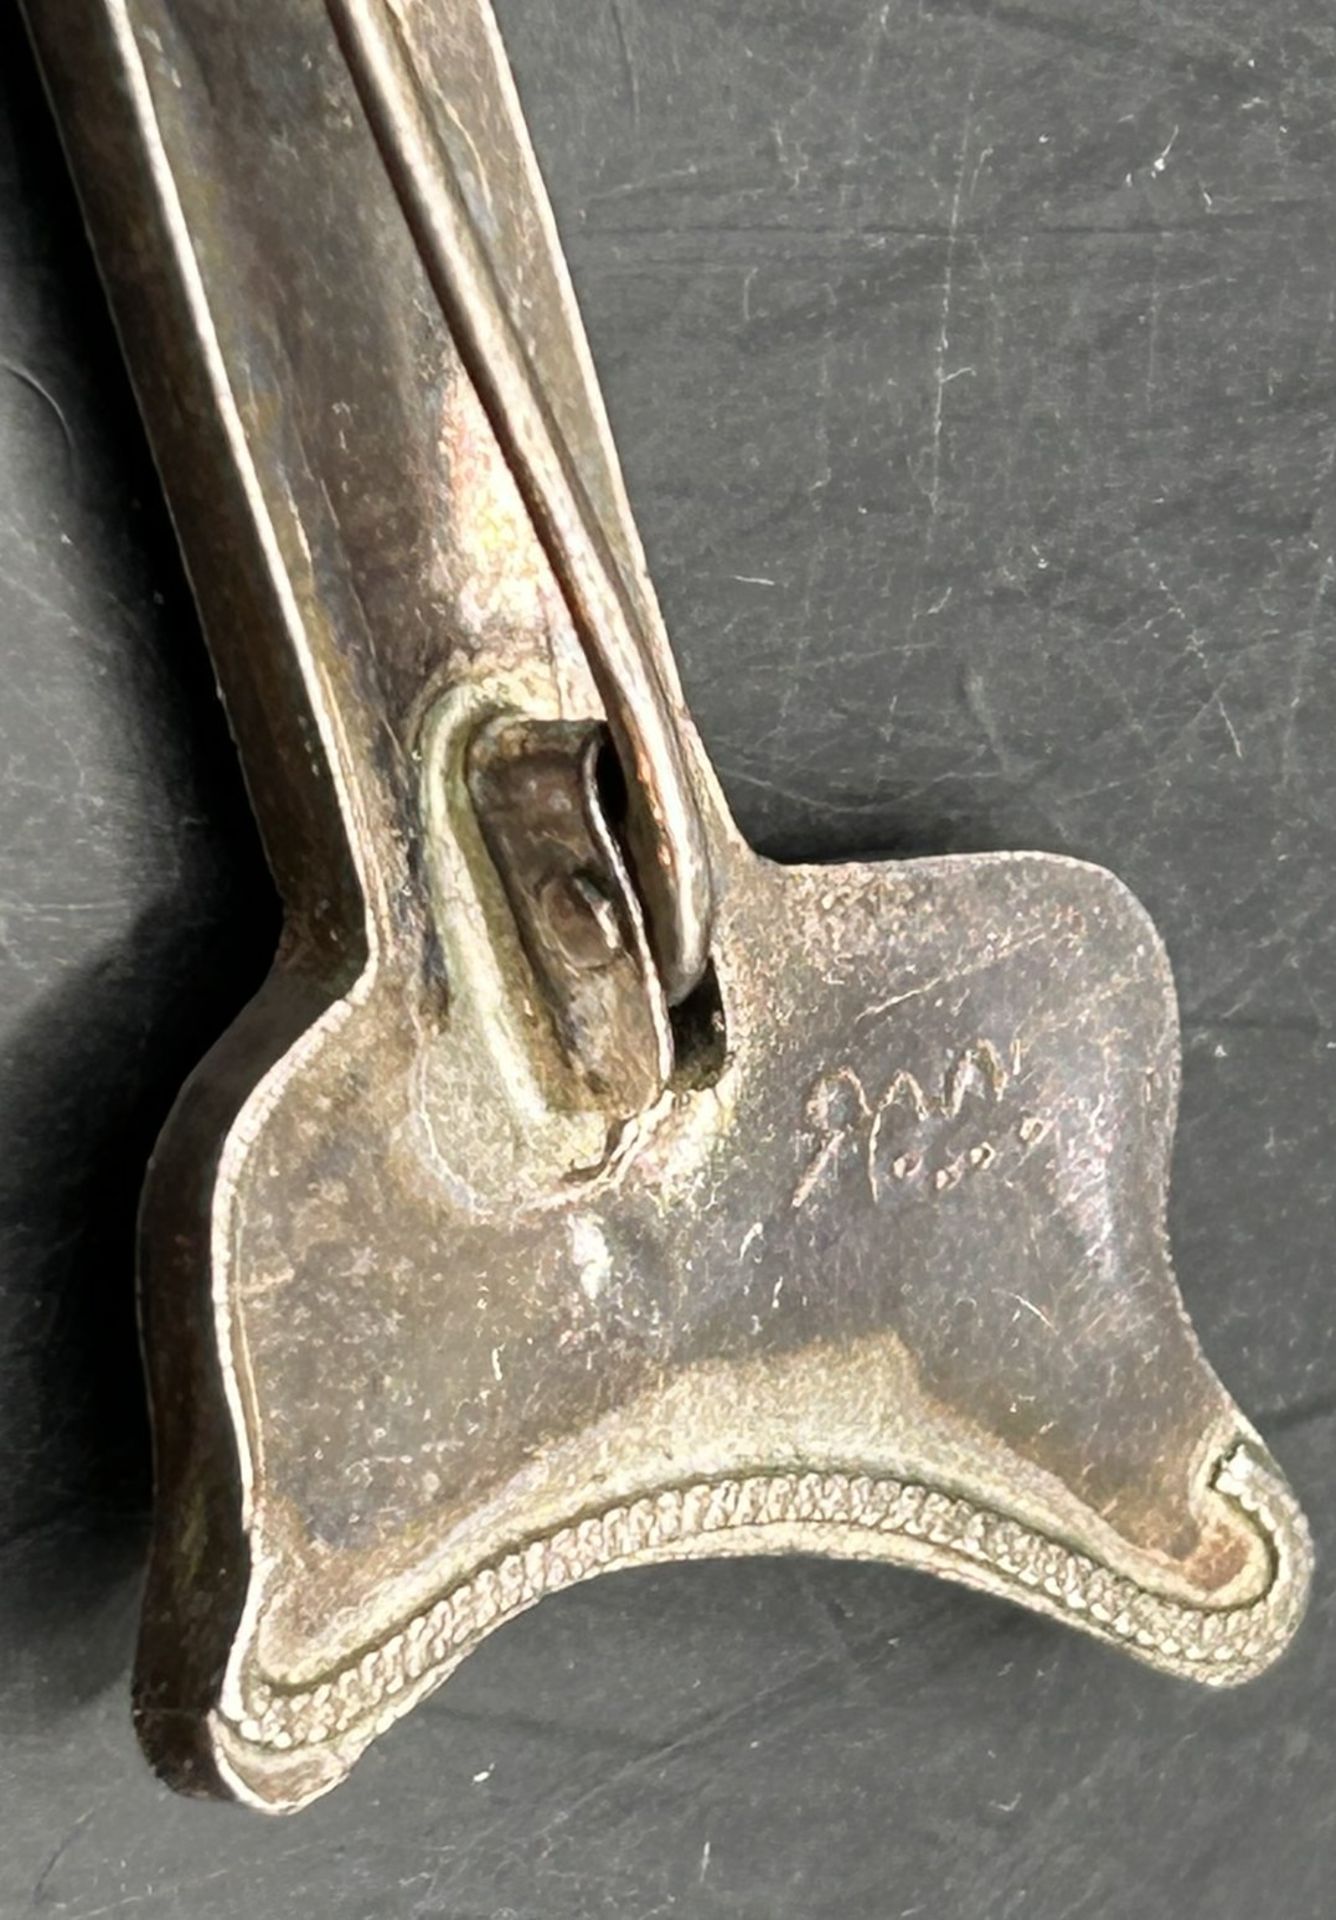 2 tg. Silber-Brosche mit Dolch aus Bein, L-6,5 cm, 6,2 gr. arabisch bezeichnet? - Bild 4 aus 5